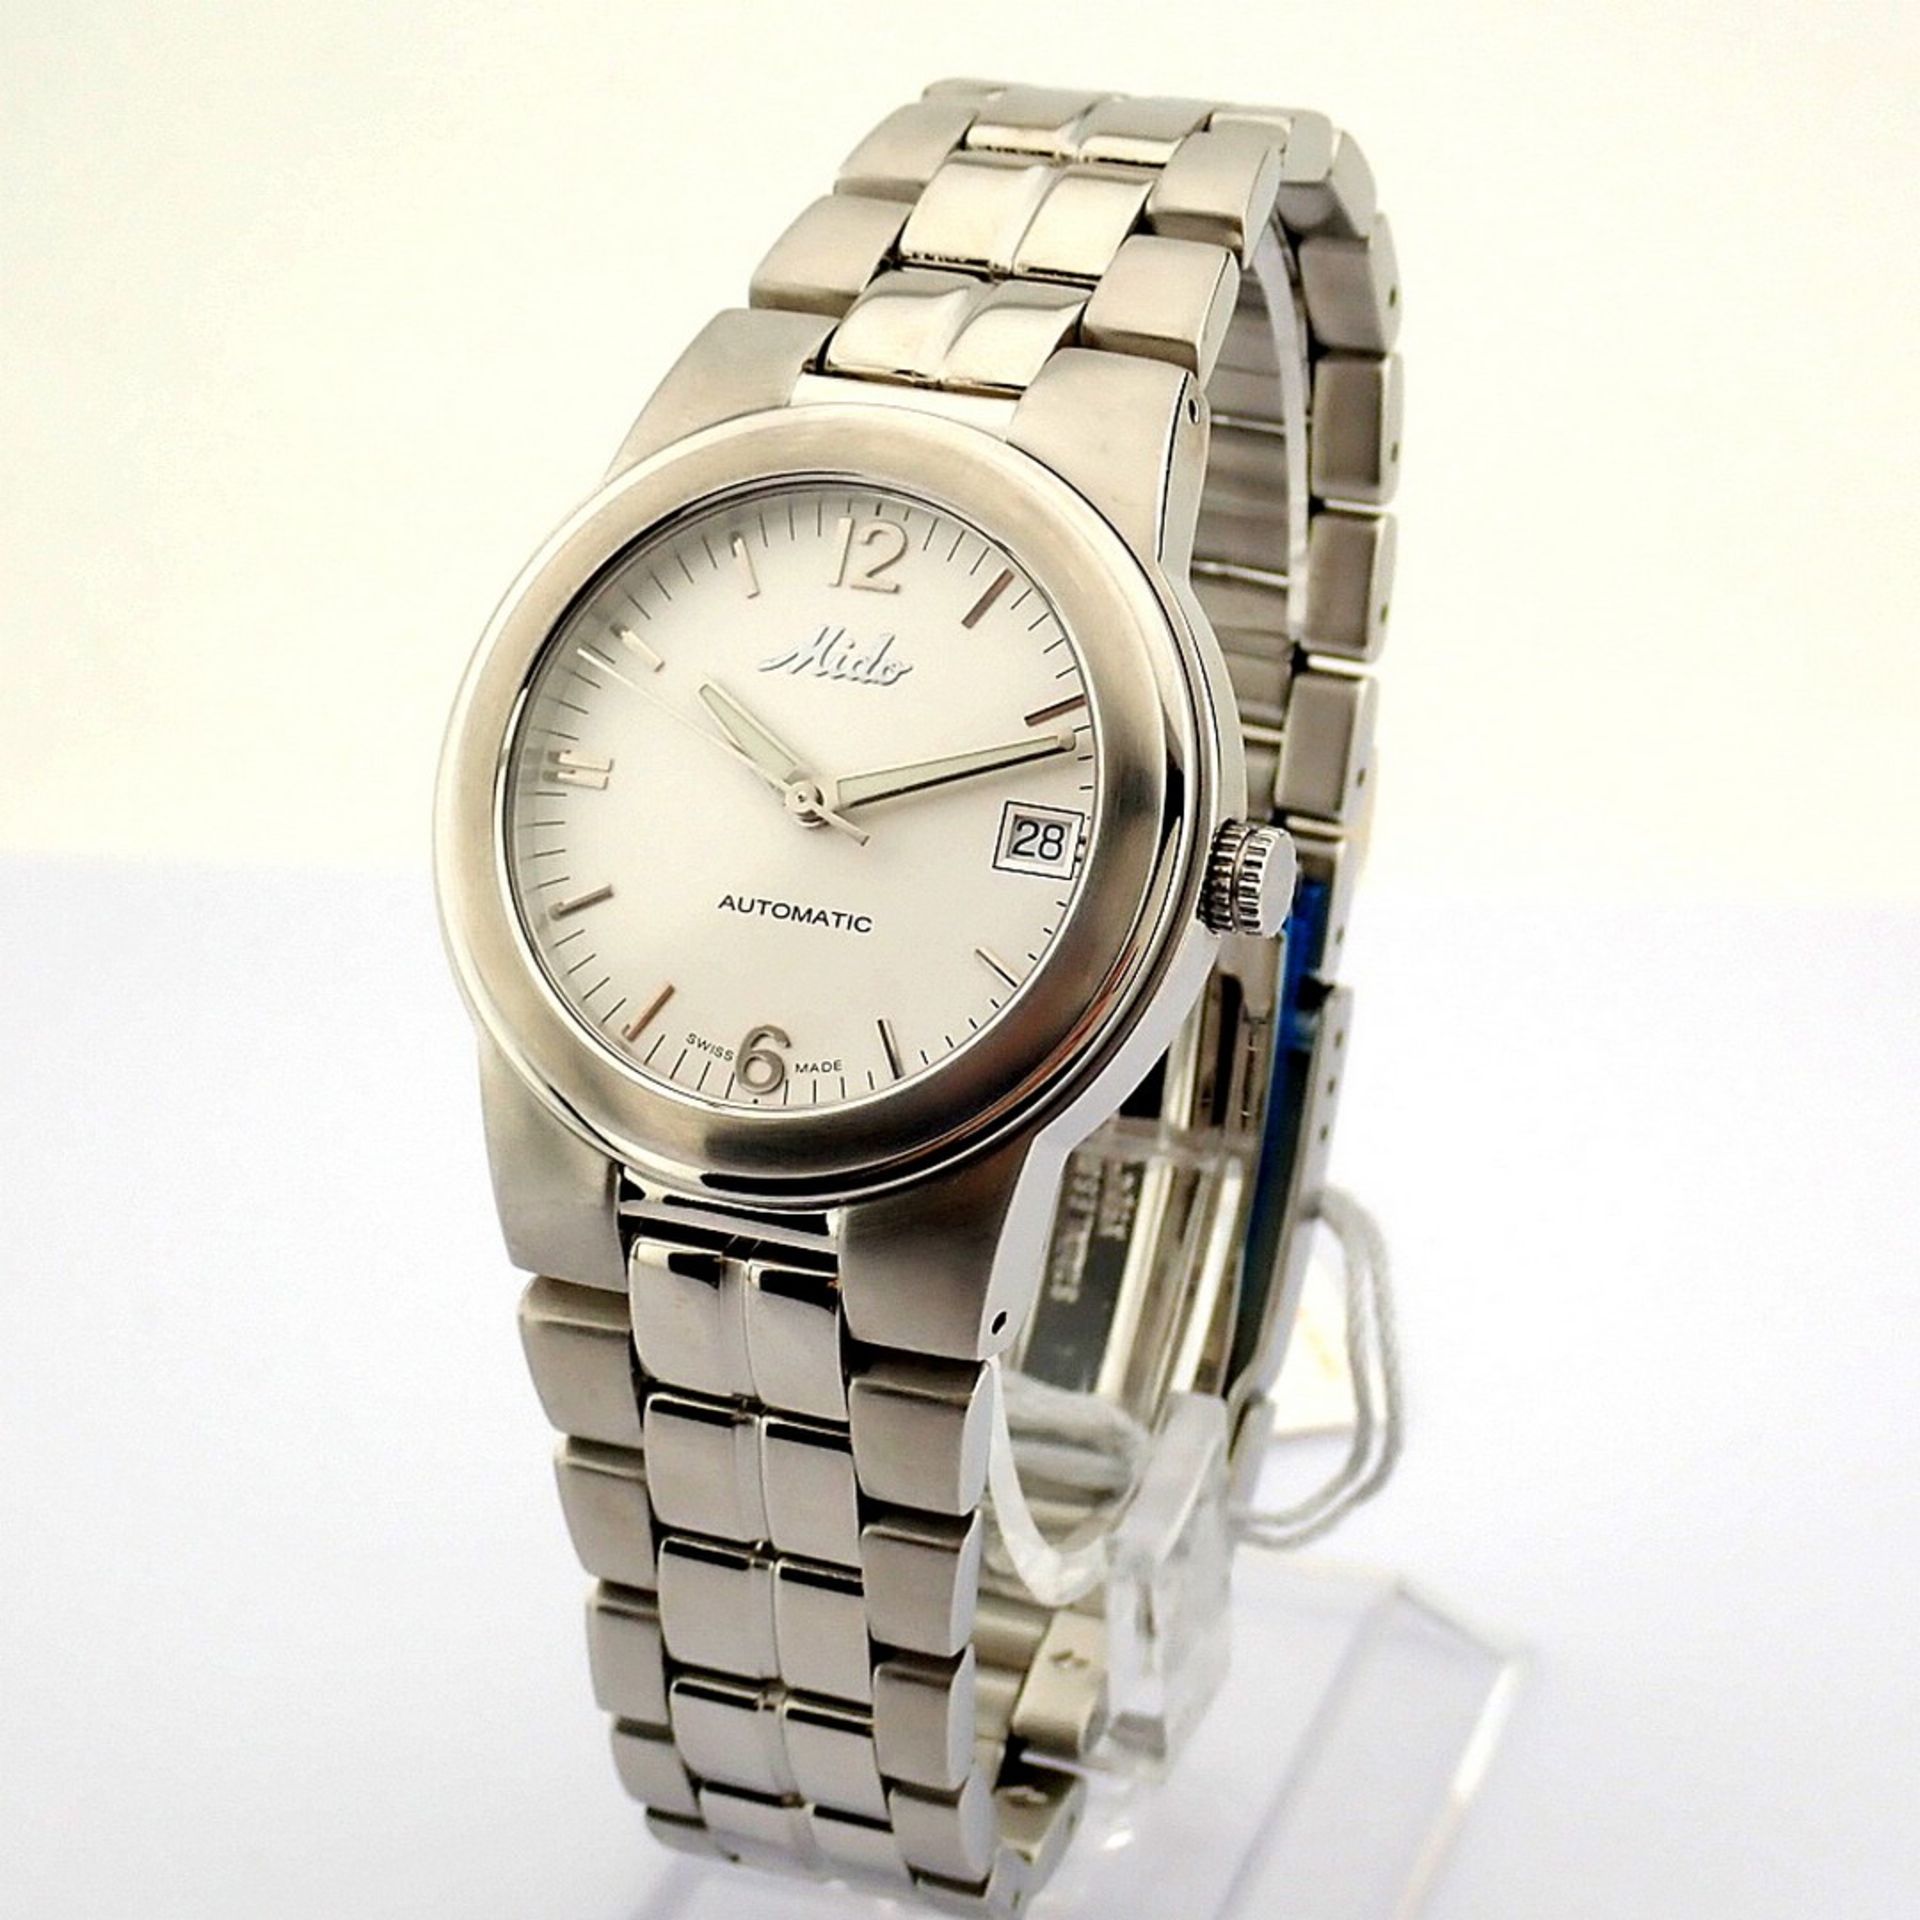 Mido / Ocean Star Aquadura (Brand New) - Gentlemen's Steel Wristwatch - Image 7 of 12